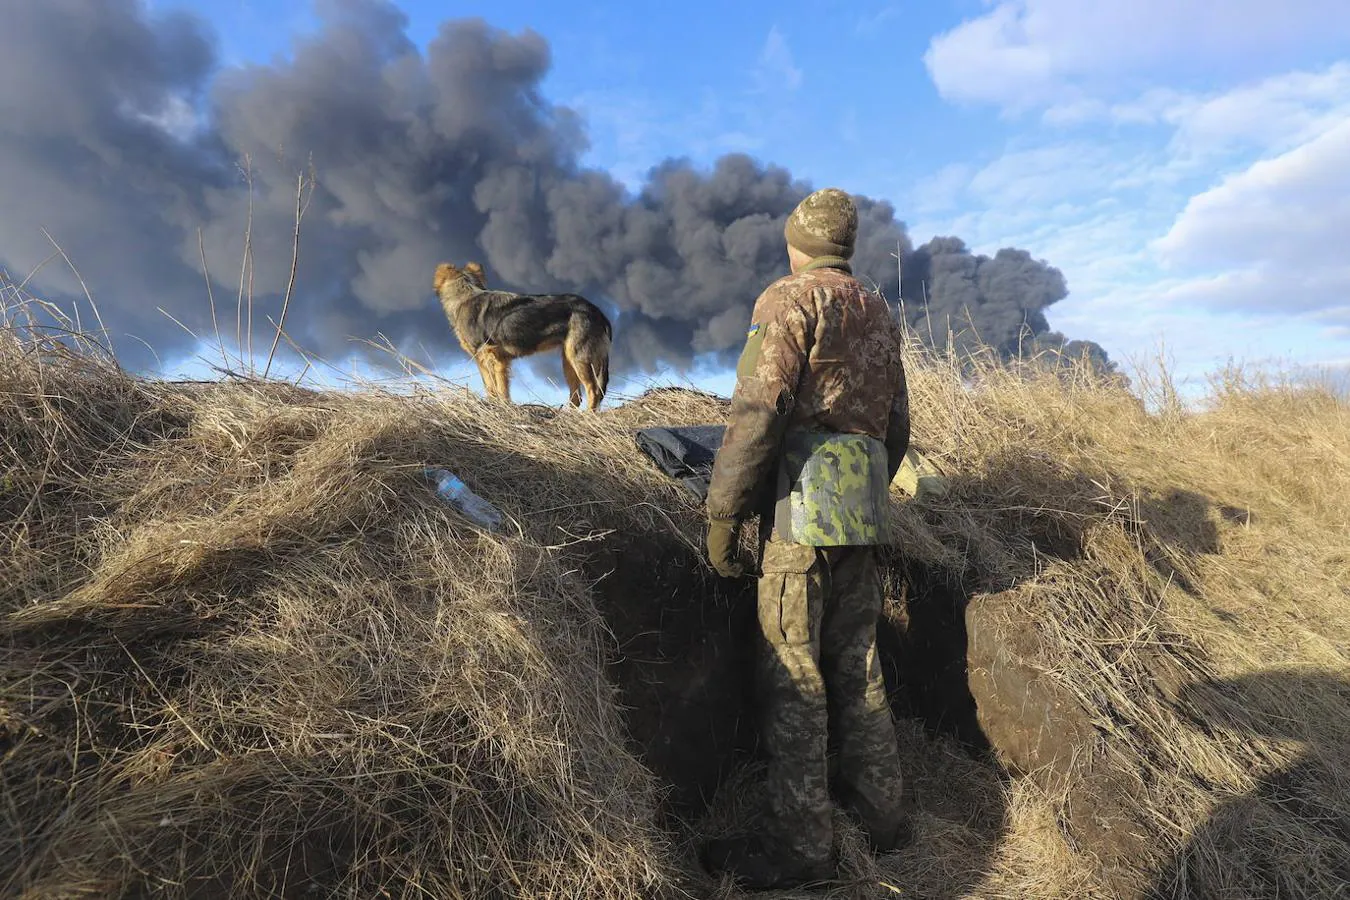 El cuarto día del conflicto en Ucrania, en imágenes